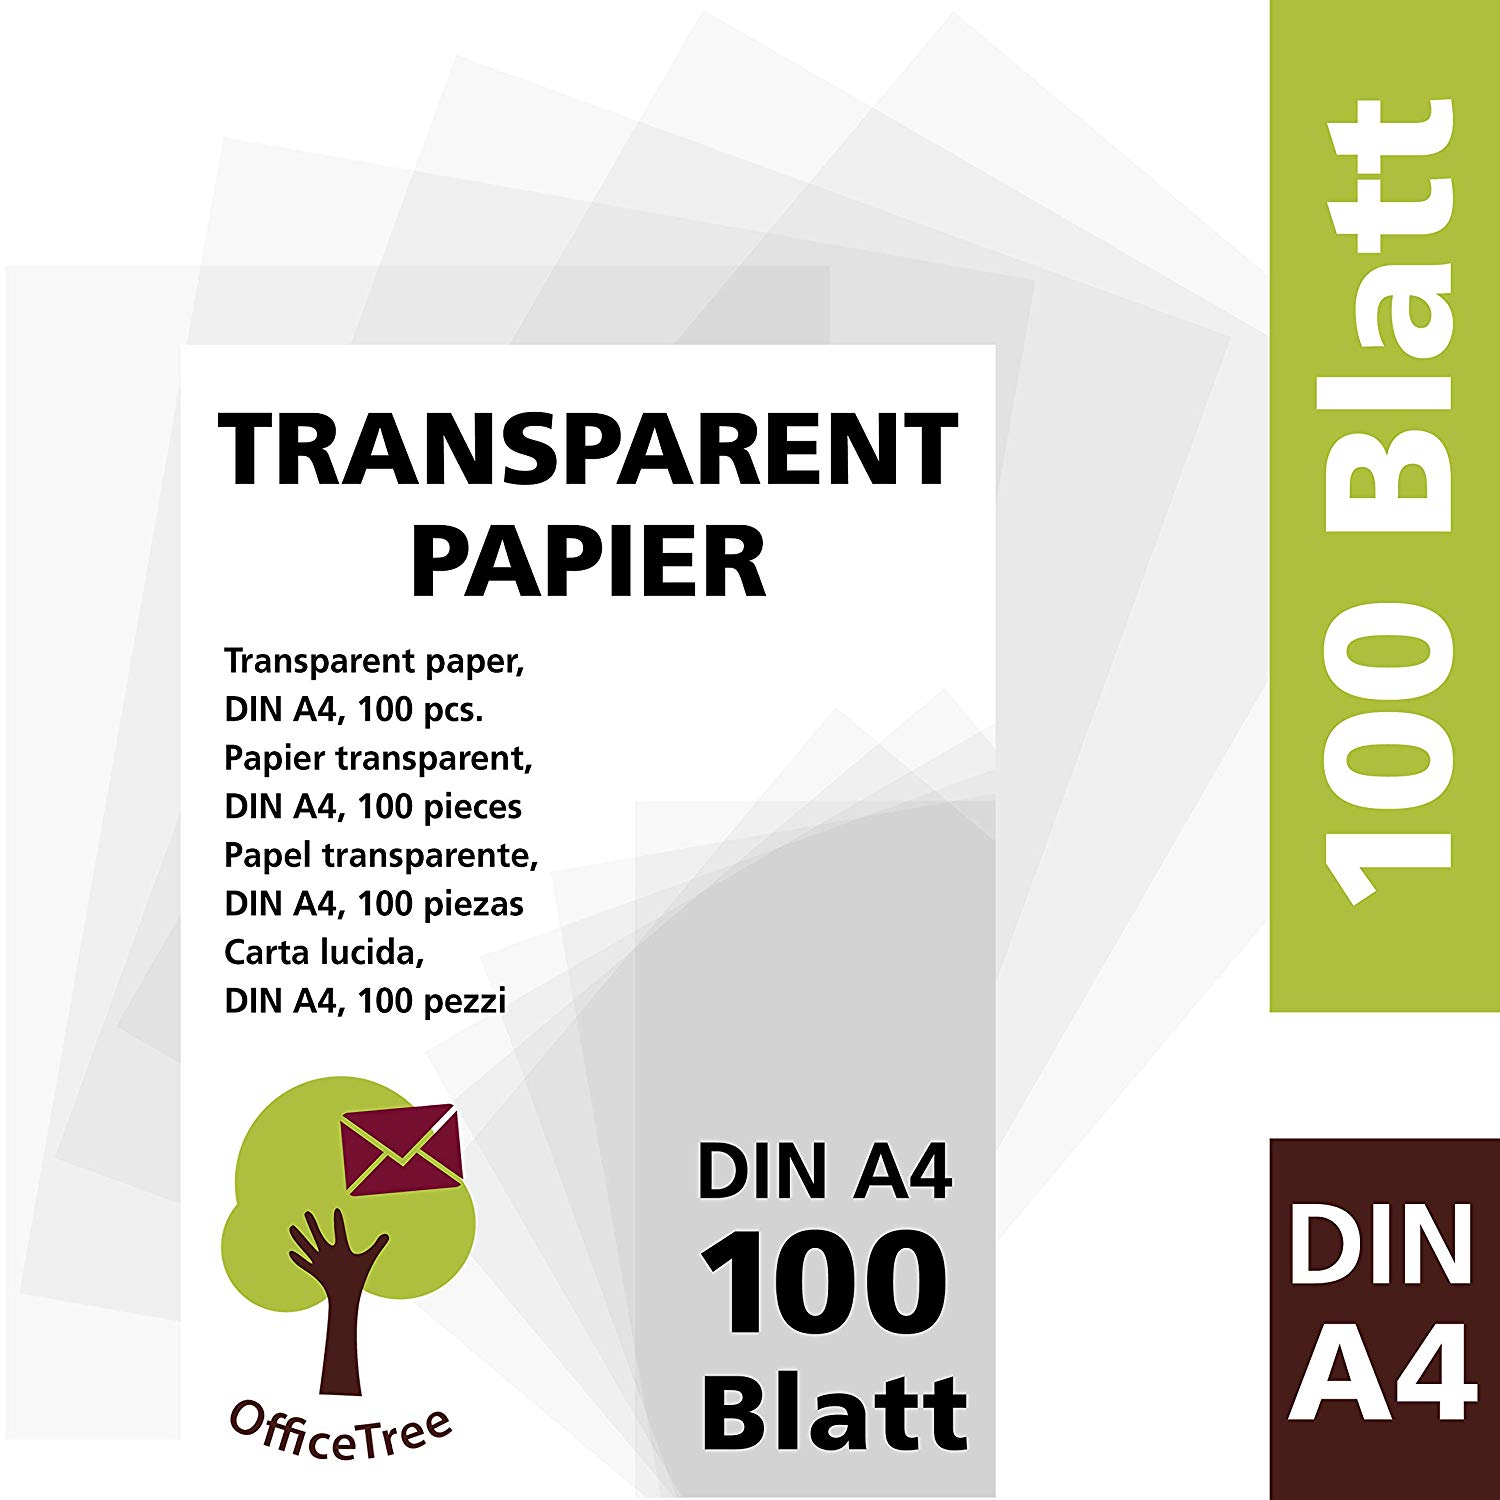 OfficeTree transparant papier laat creatieve harten sneller kloppen: 
Het is ongelooflijk veelzijdig en op verschillende manieren te gebruiken. 